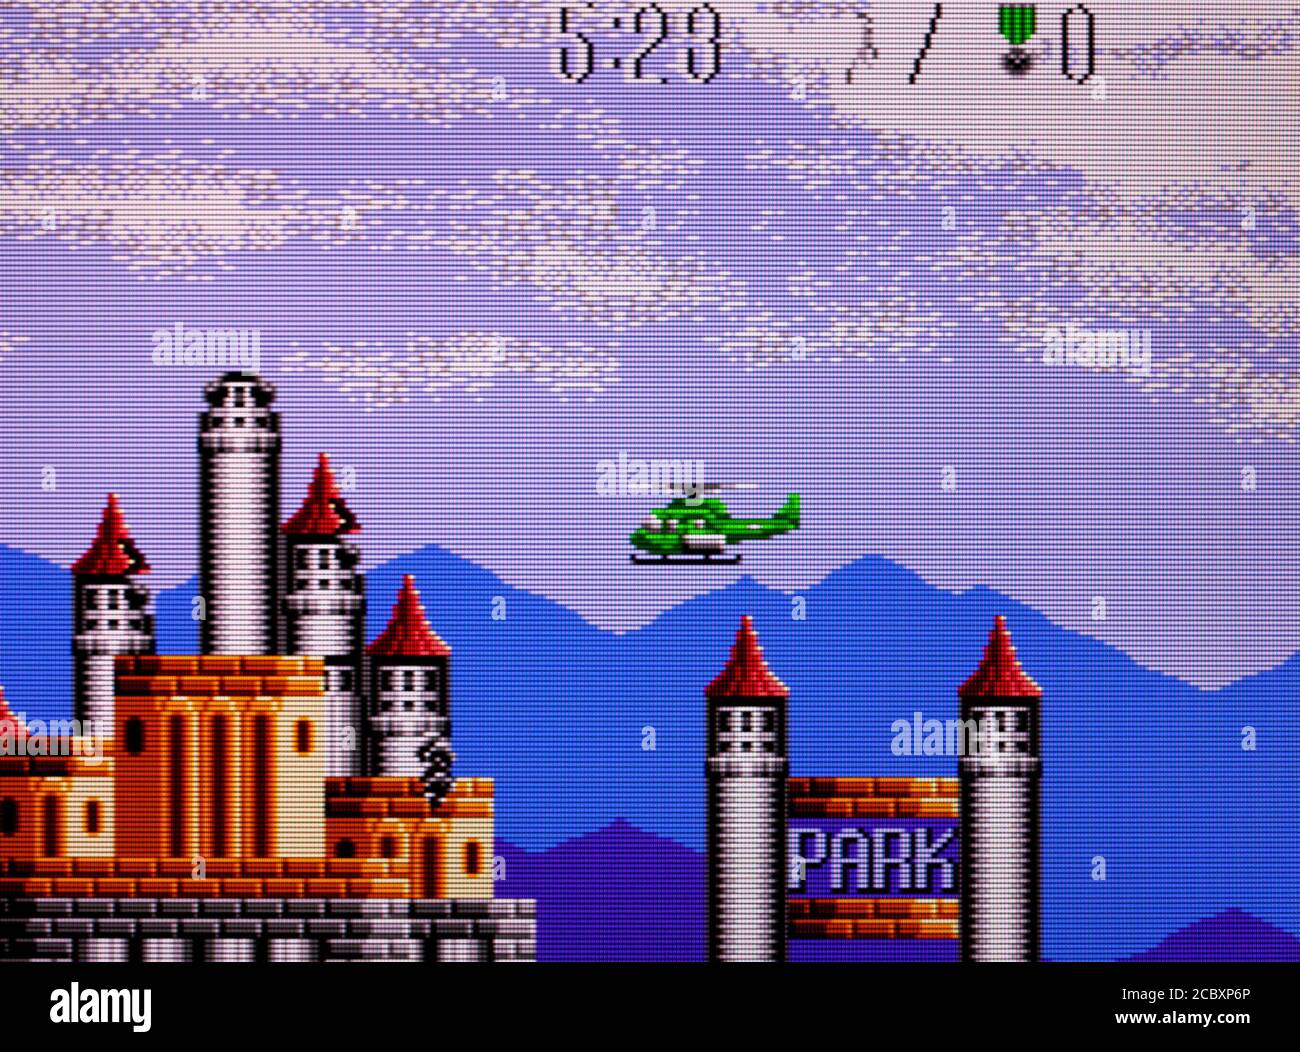 Sauvetage aérien - Sega Master System - SMS - éditorial à utiliser uniquement Banque D'Images